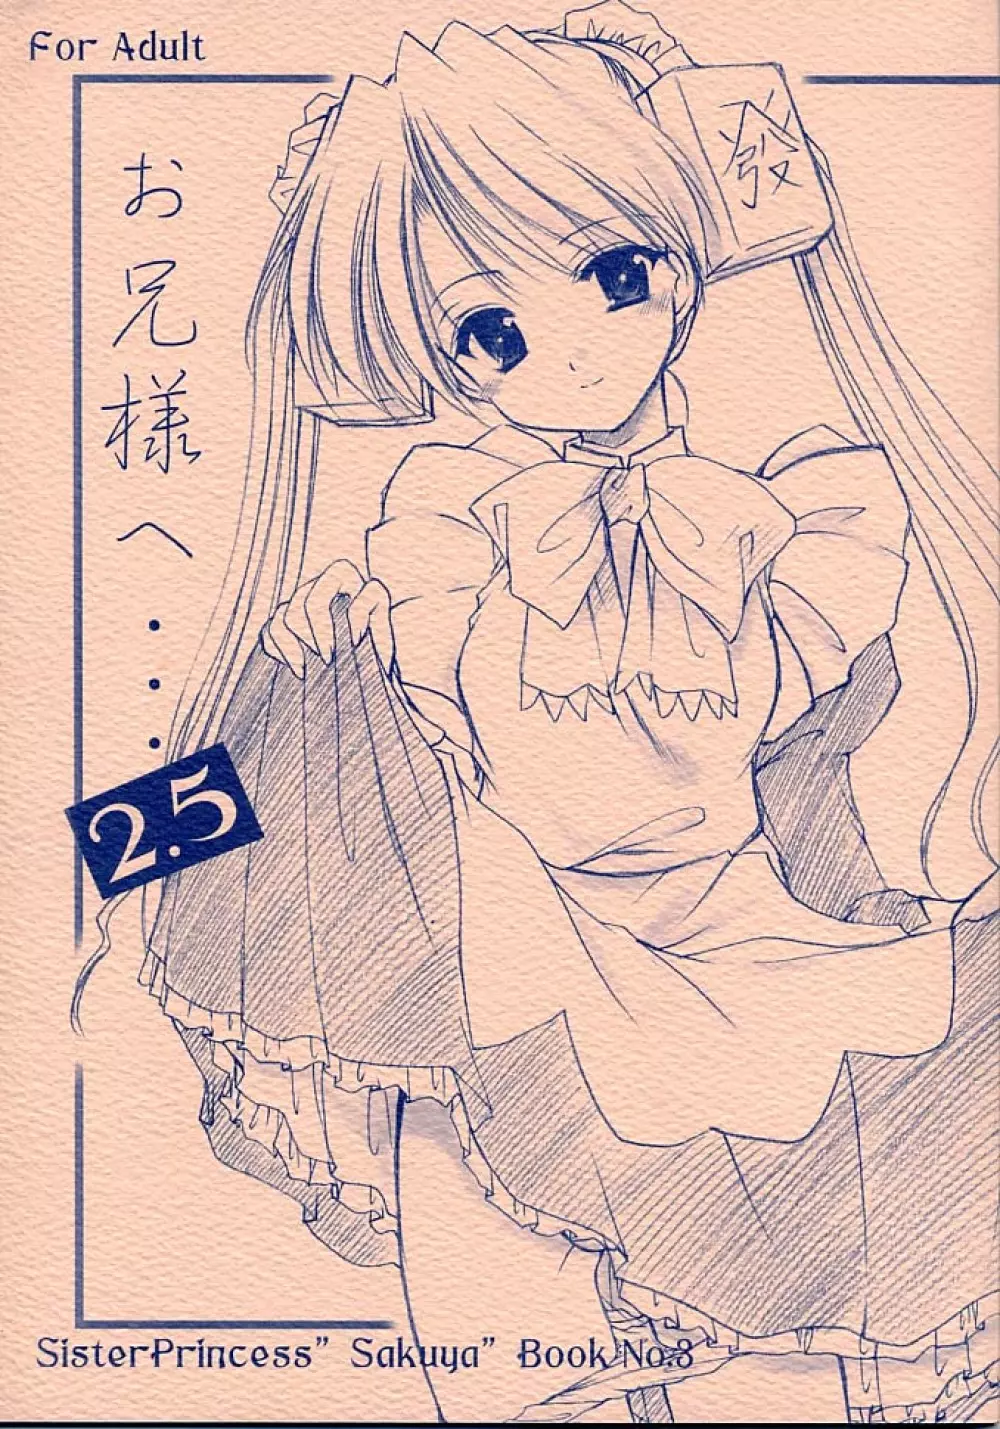 お兄様へ…2.5 Sister Princess “Sakuya” Book No.3